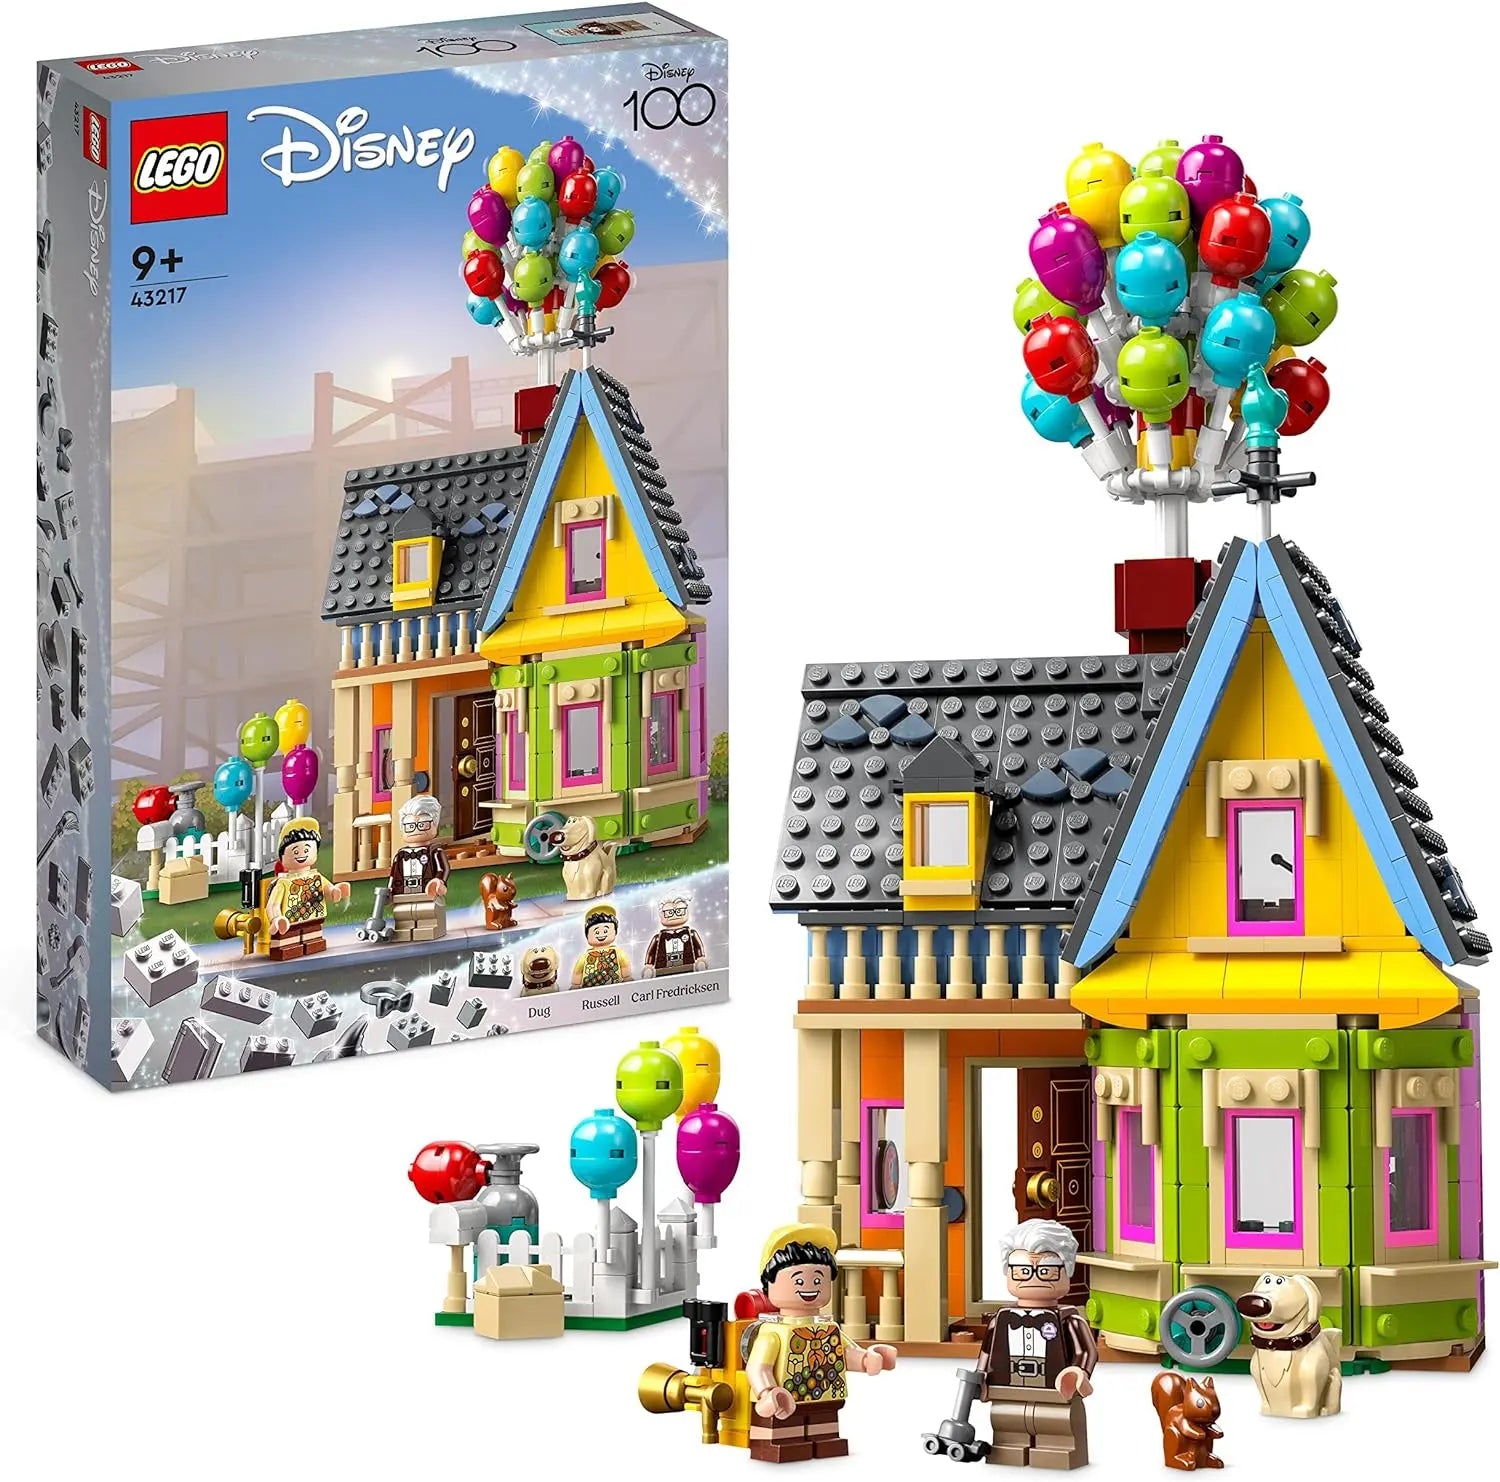 jouet 43217 La Maison de « Là-haut » LEGO Disney lego